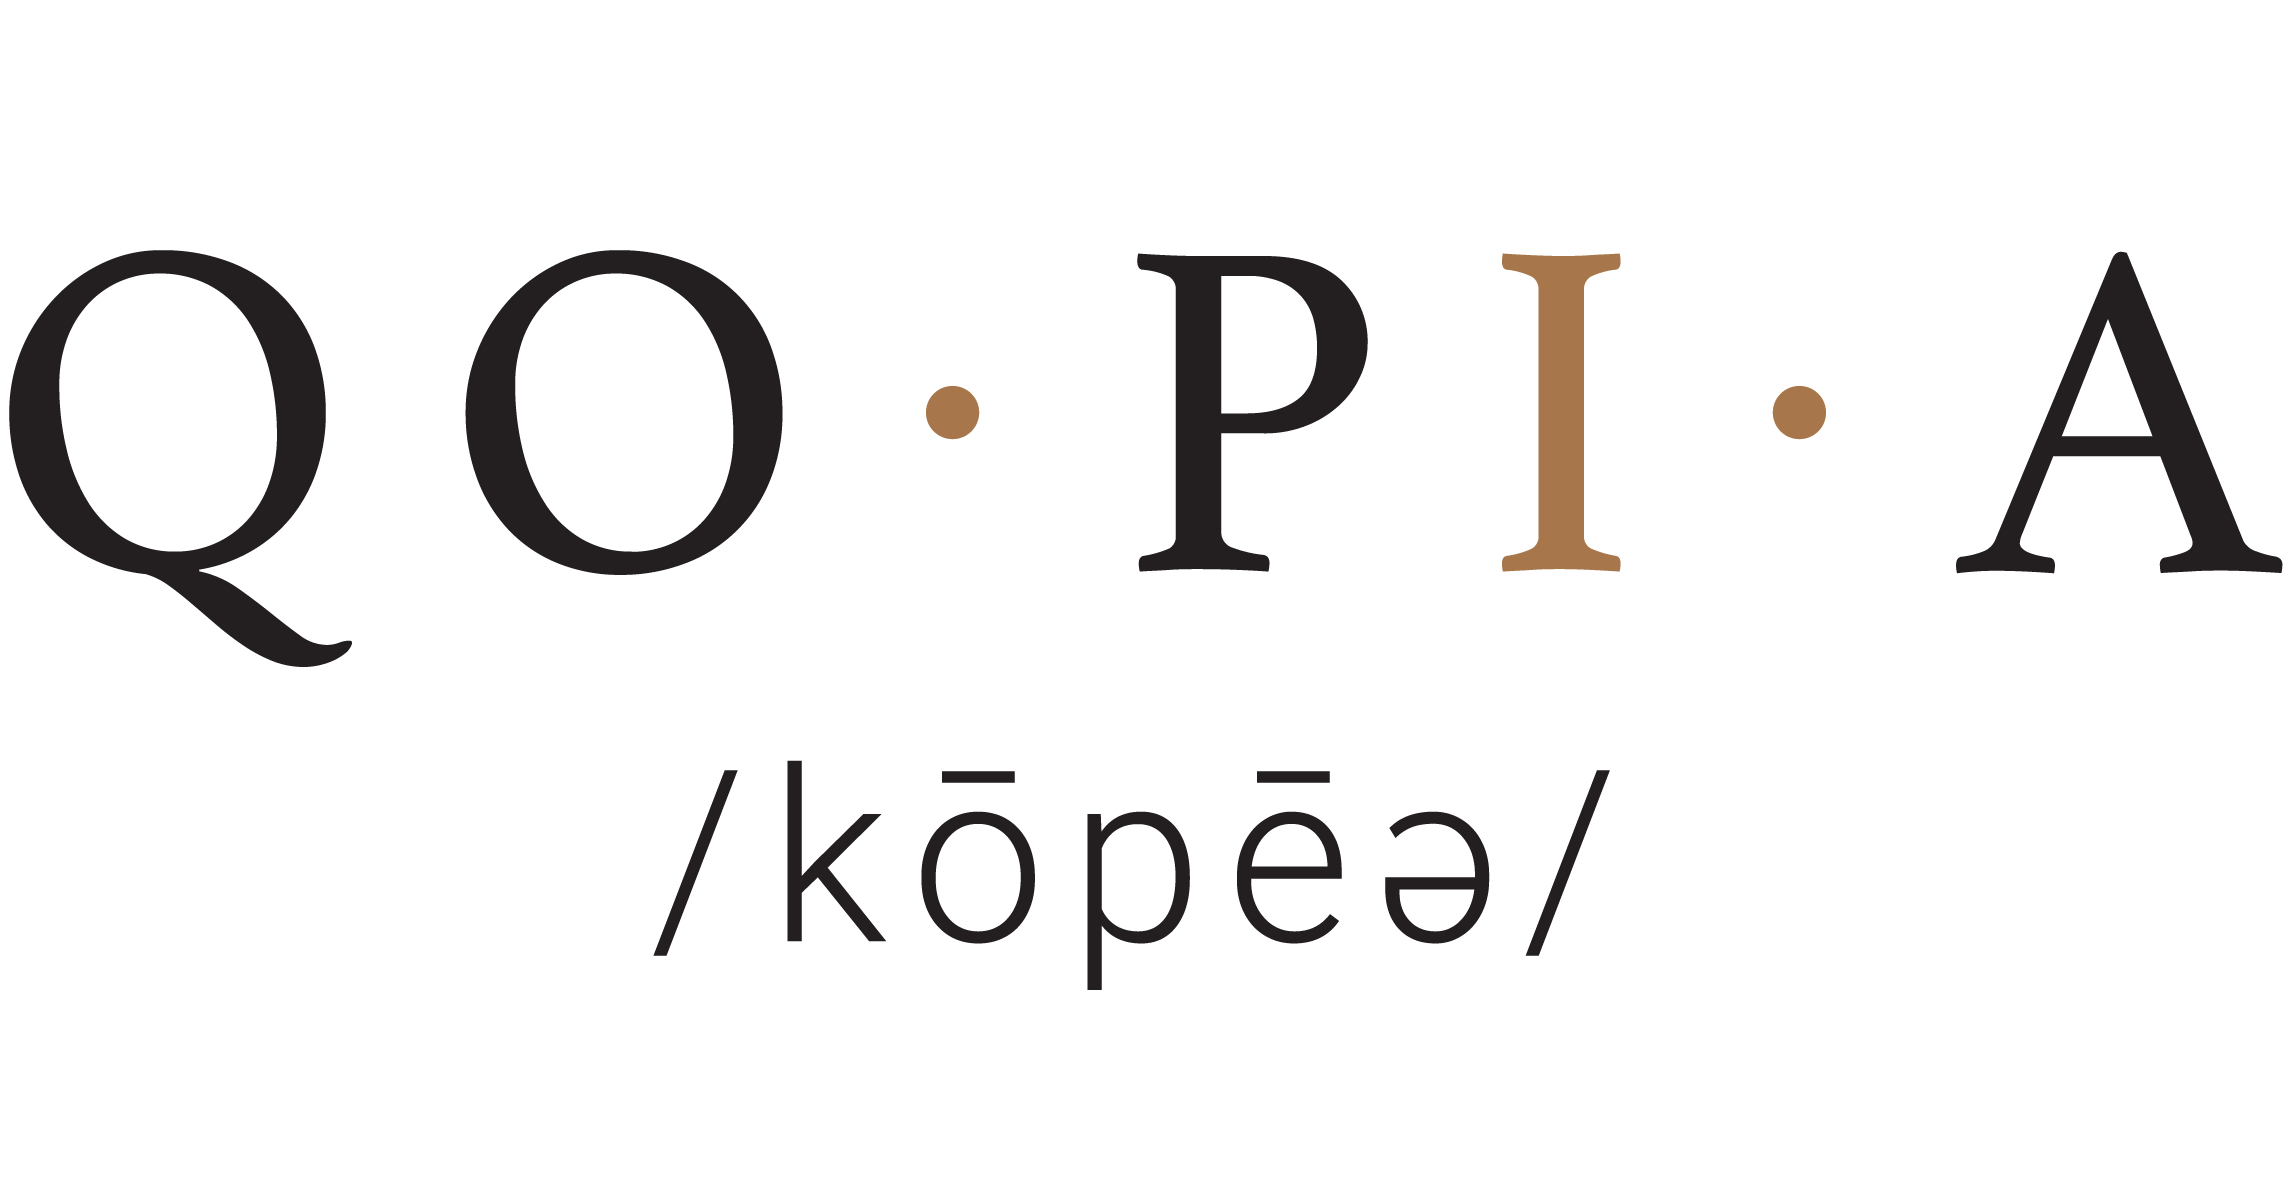 Qopia Name Pronunciation